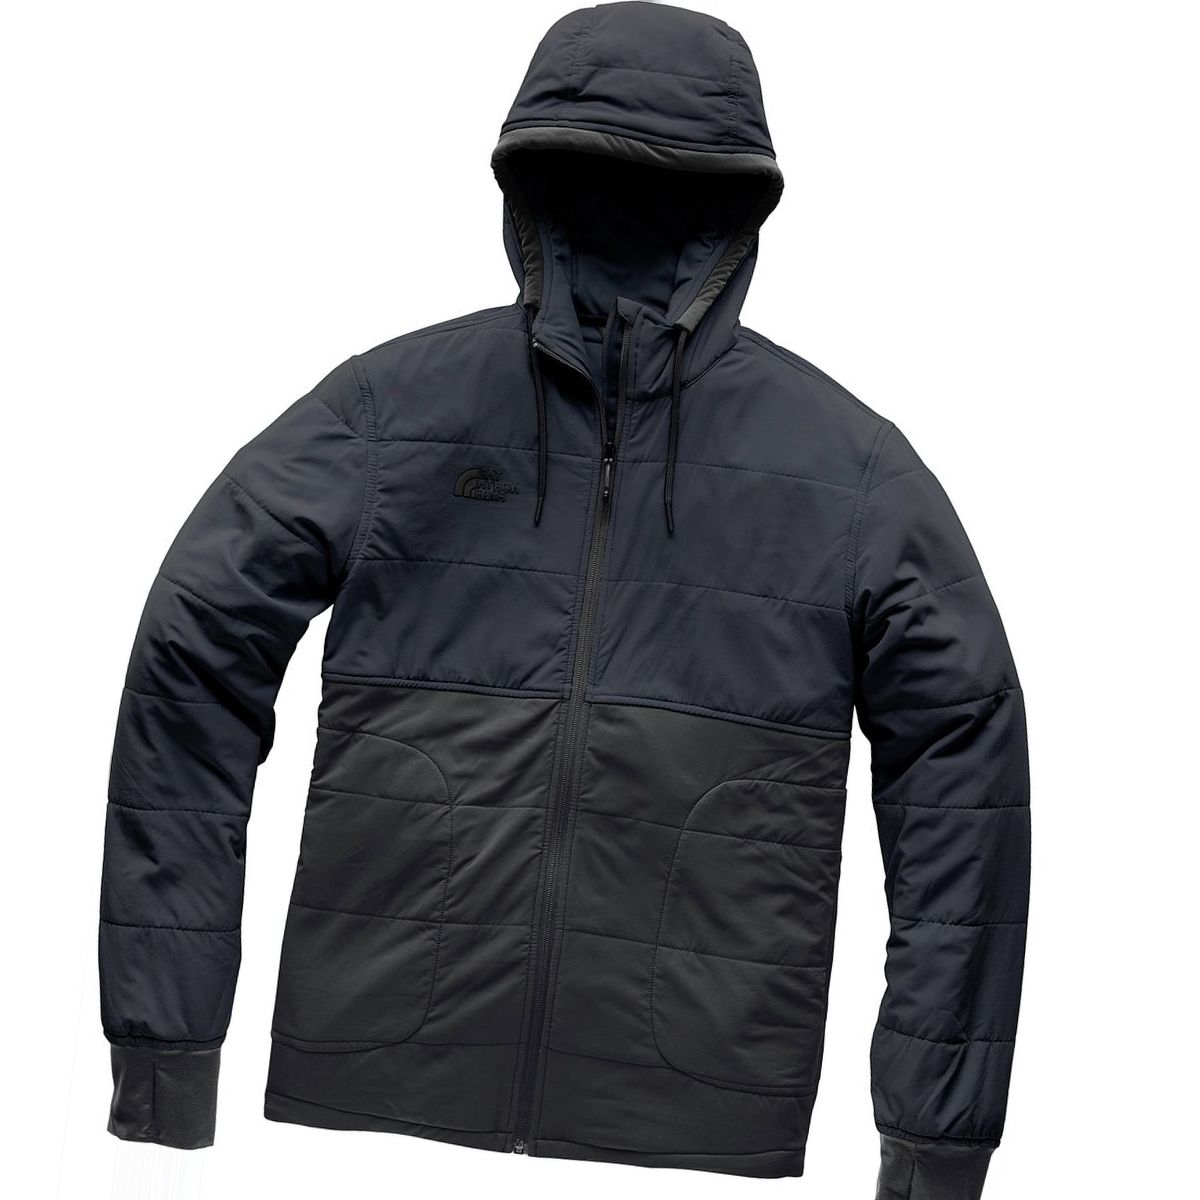 The North Face Mountain Sweatshirt 2.0 Full-Zip Hoodie - Men's